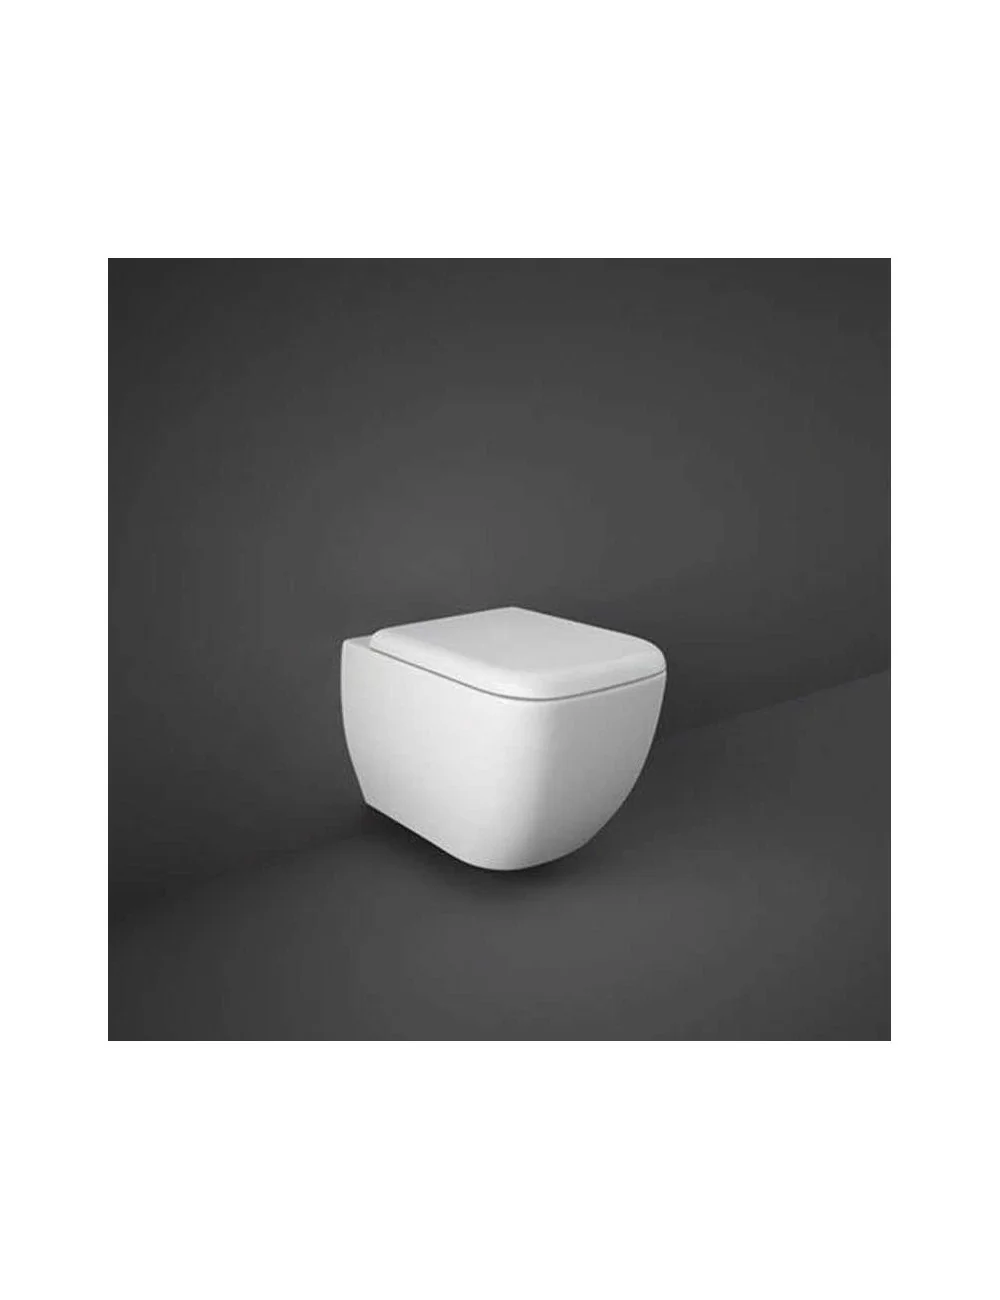 WC sospeso rimless w/hidden fixations linea Metropolitan Rak Ceramics